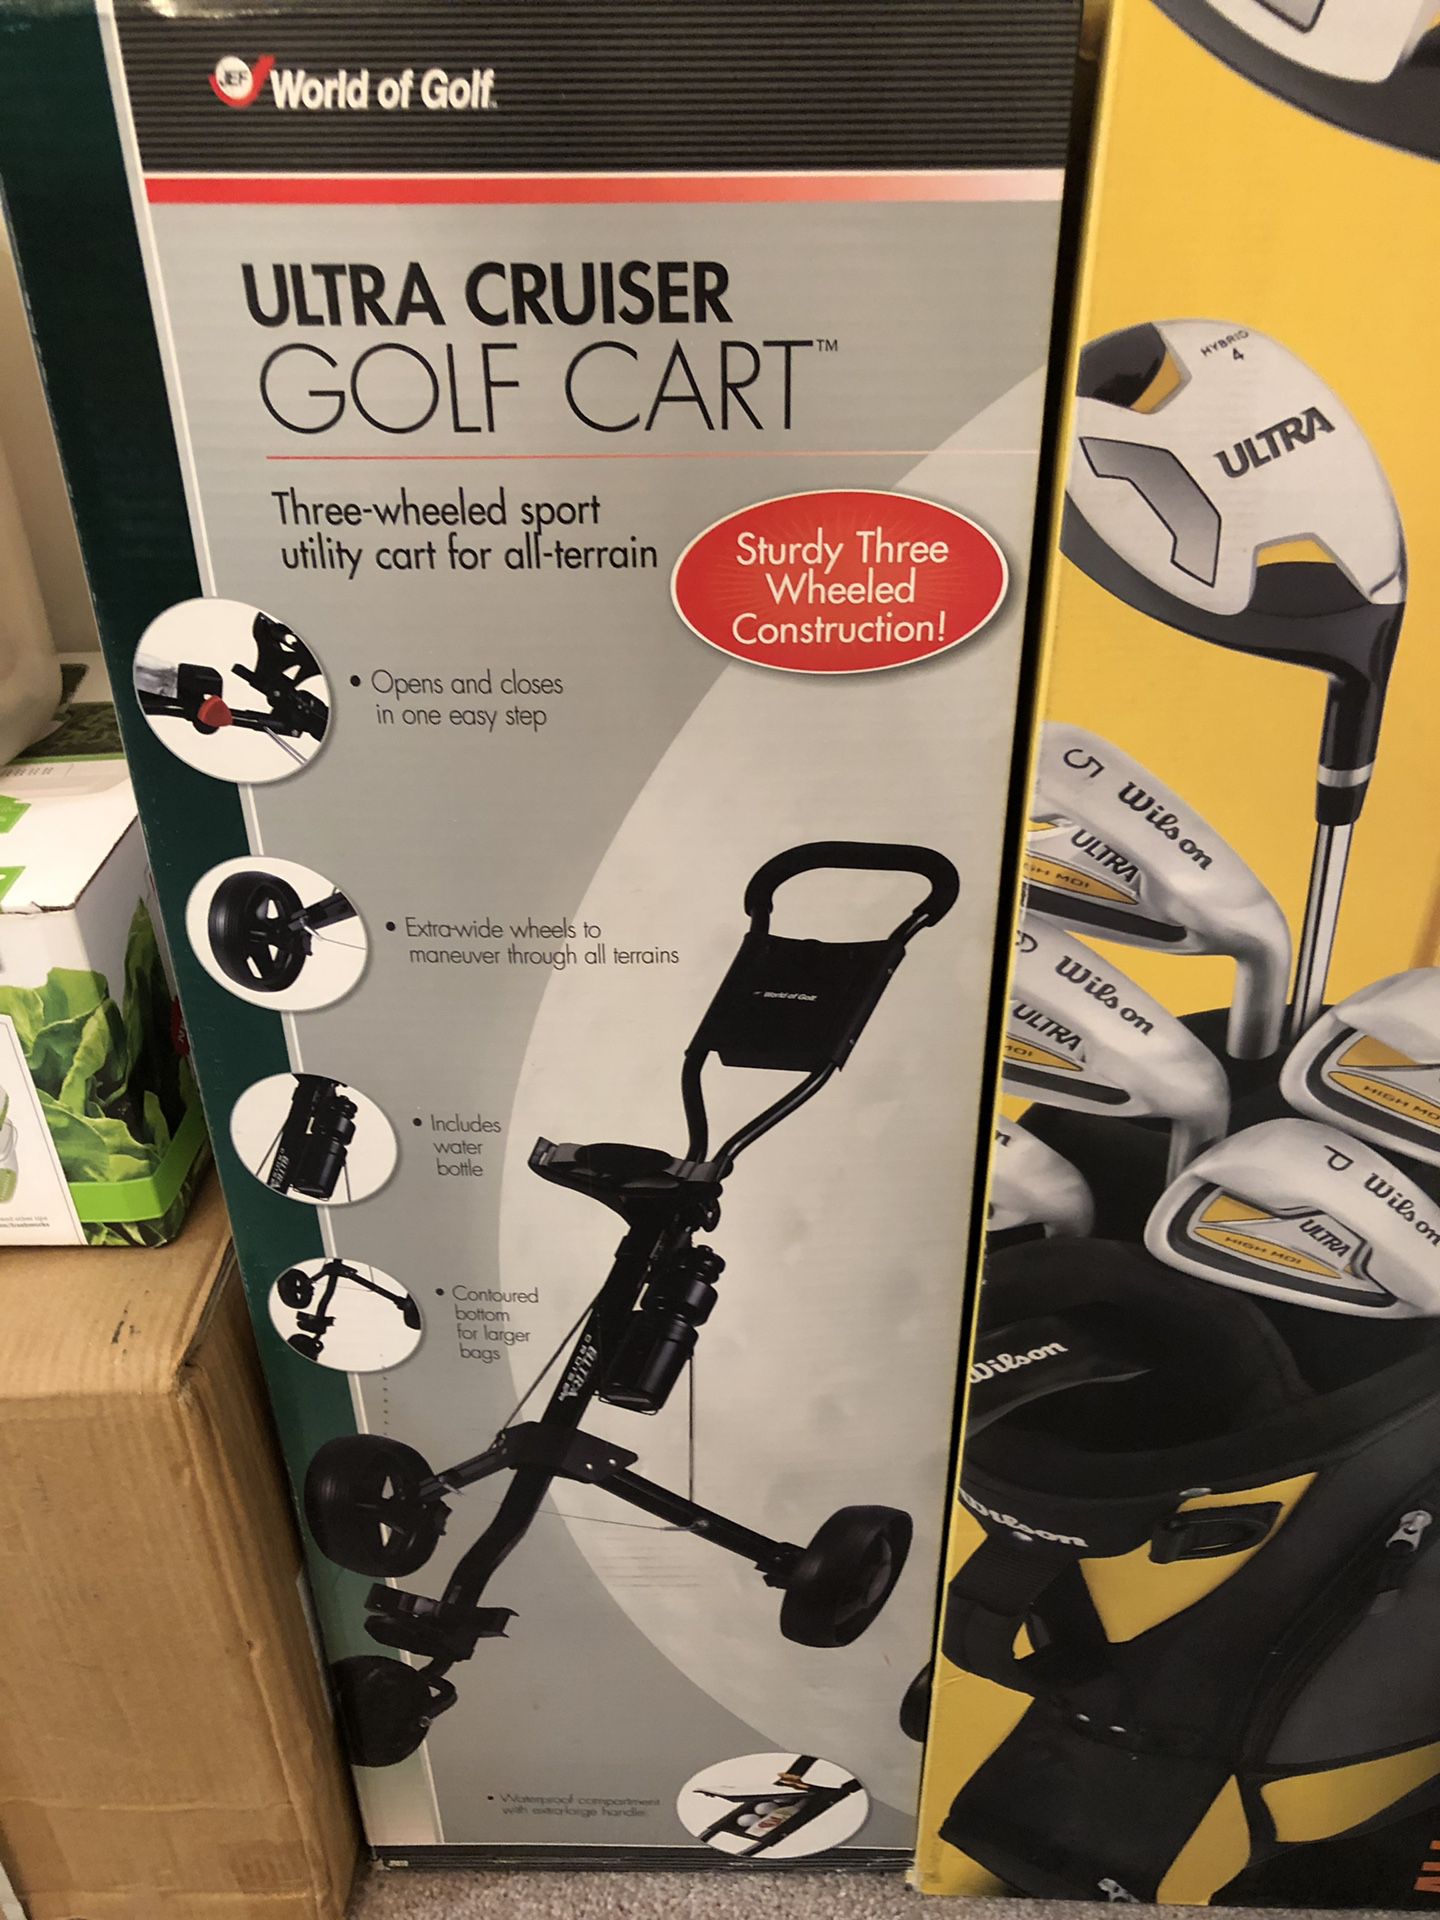 Ultra cruiser golf cart